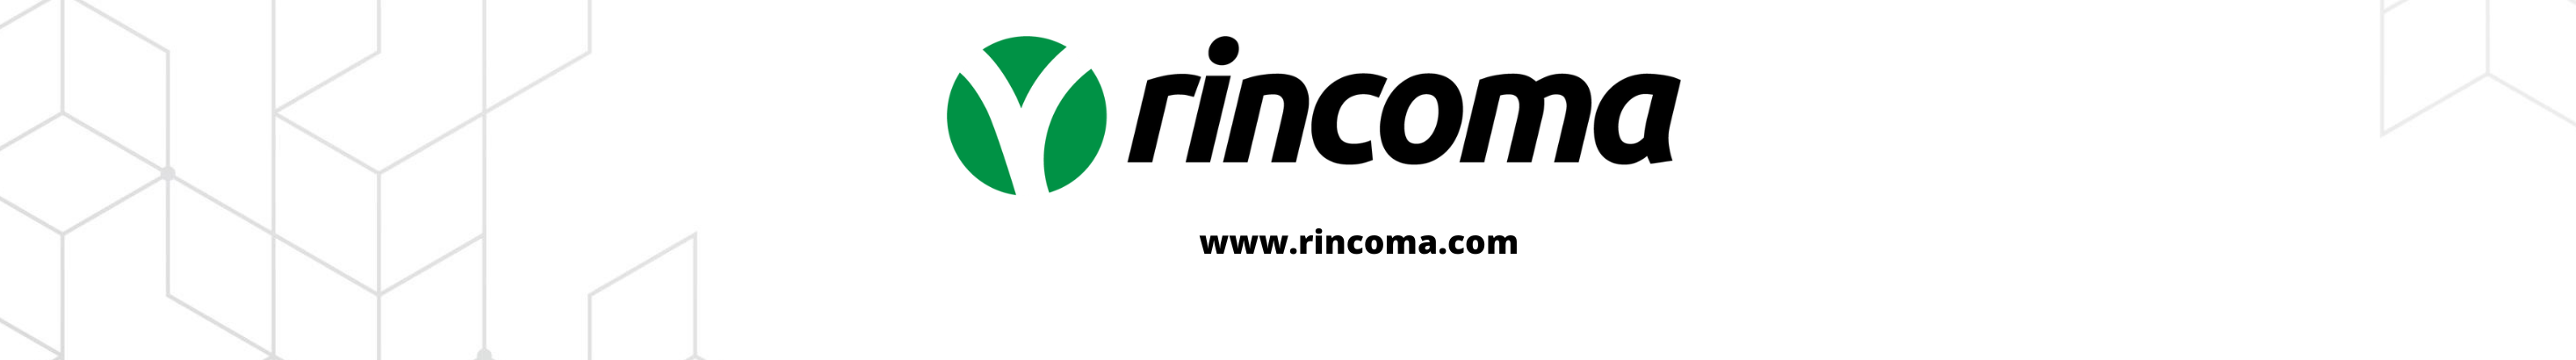 Rincoma .'s profile banner